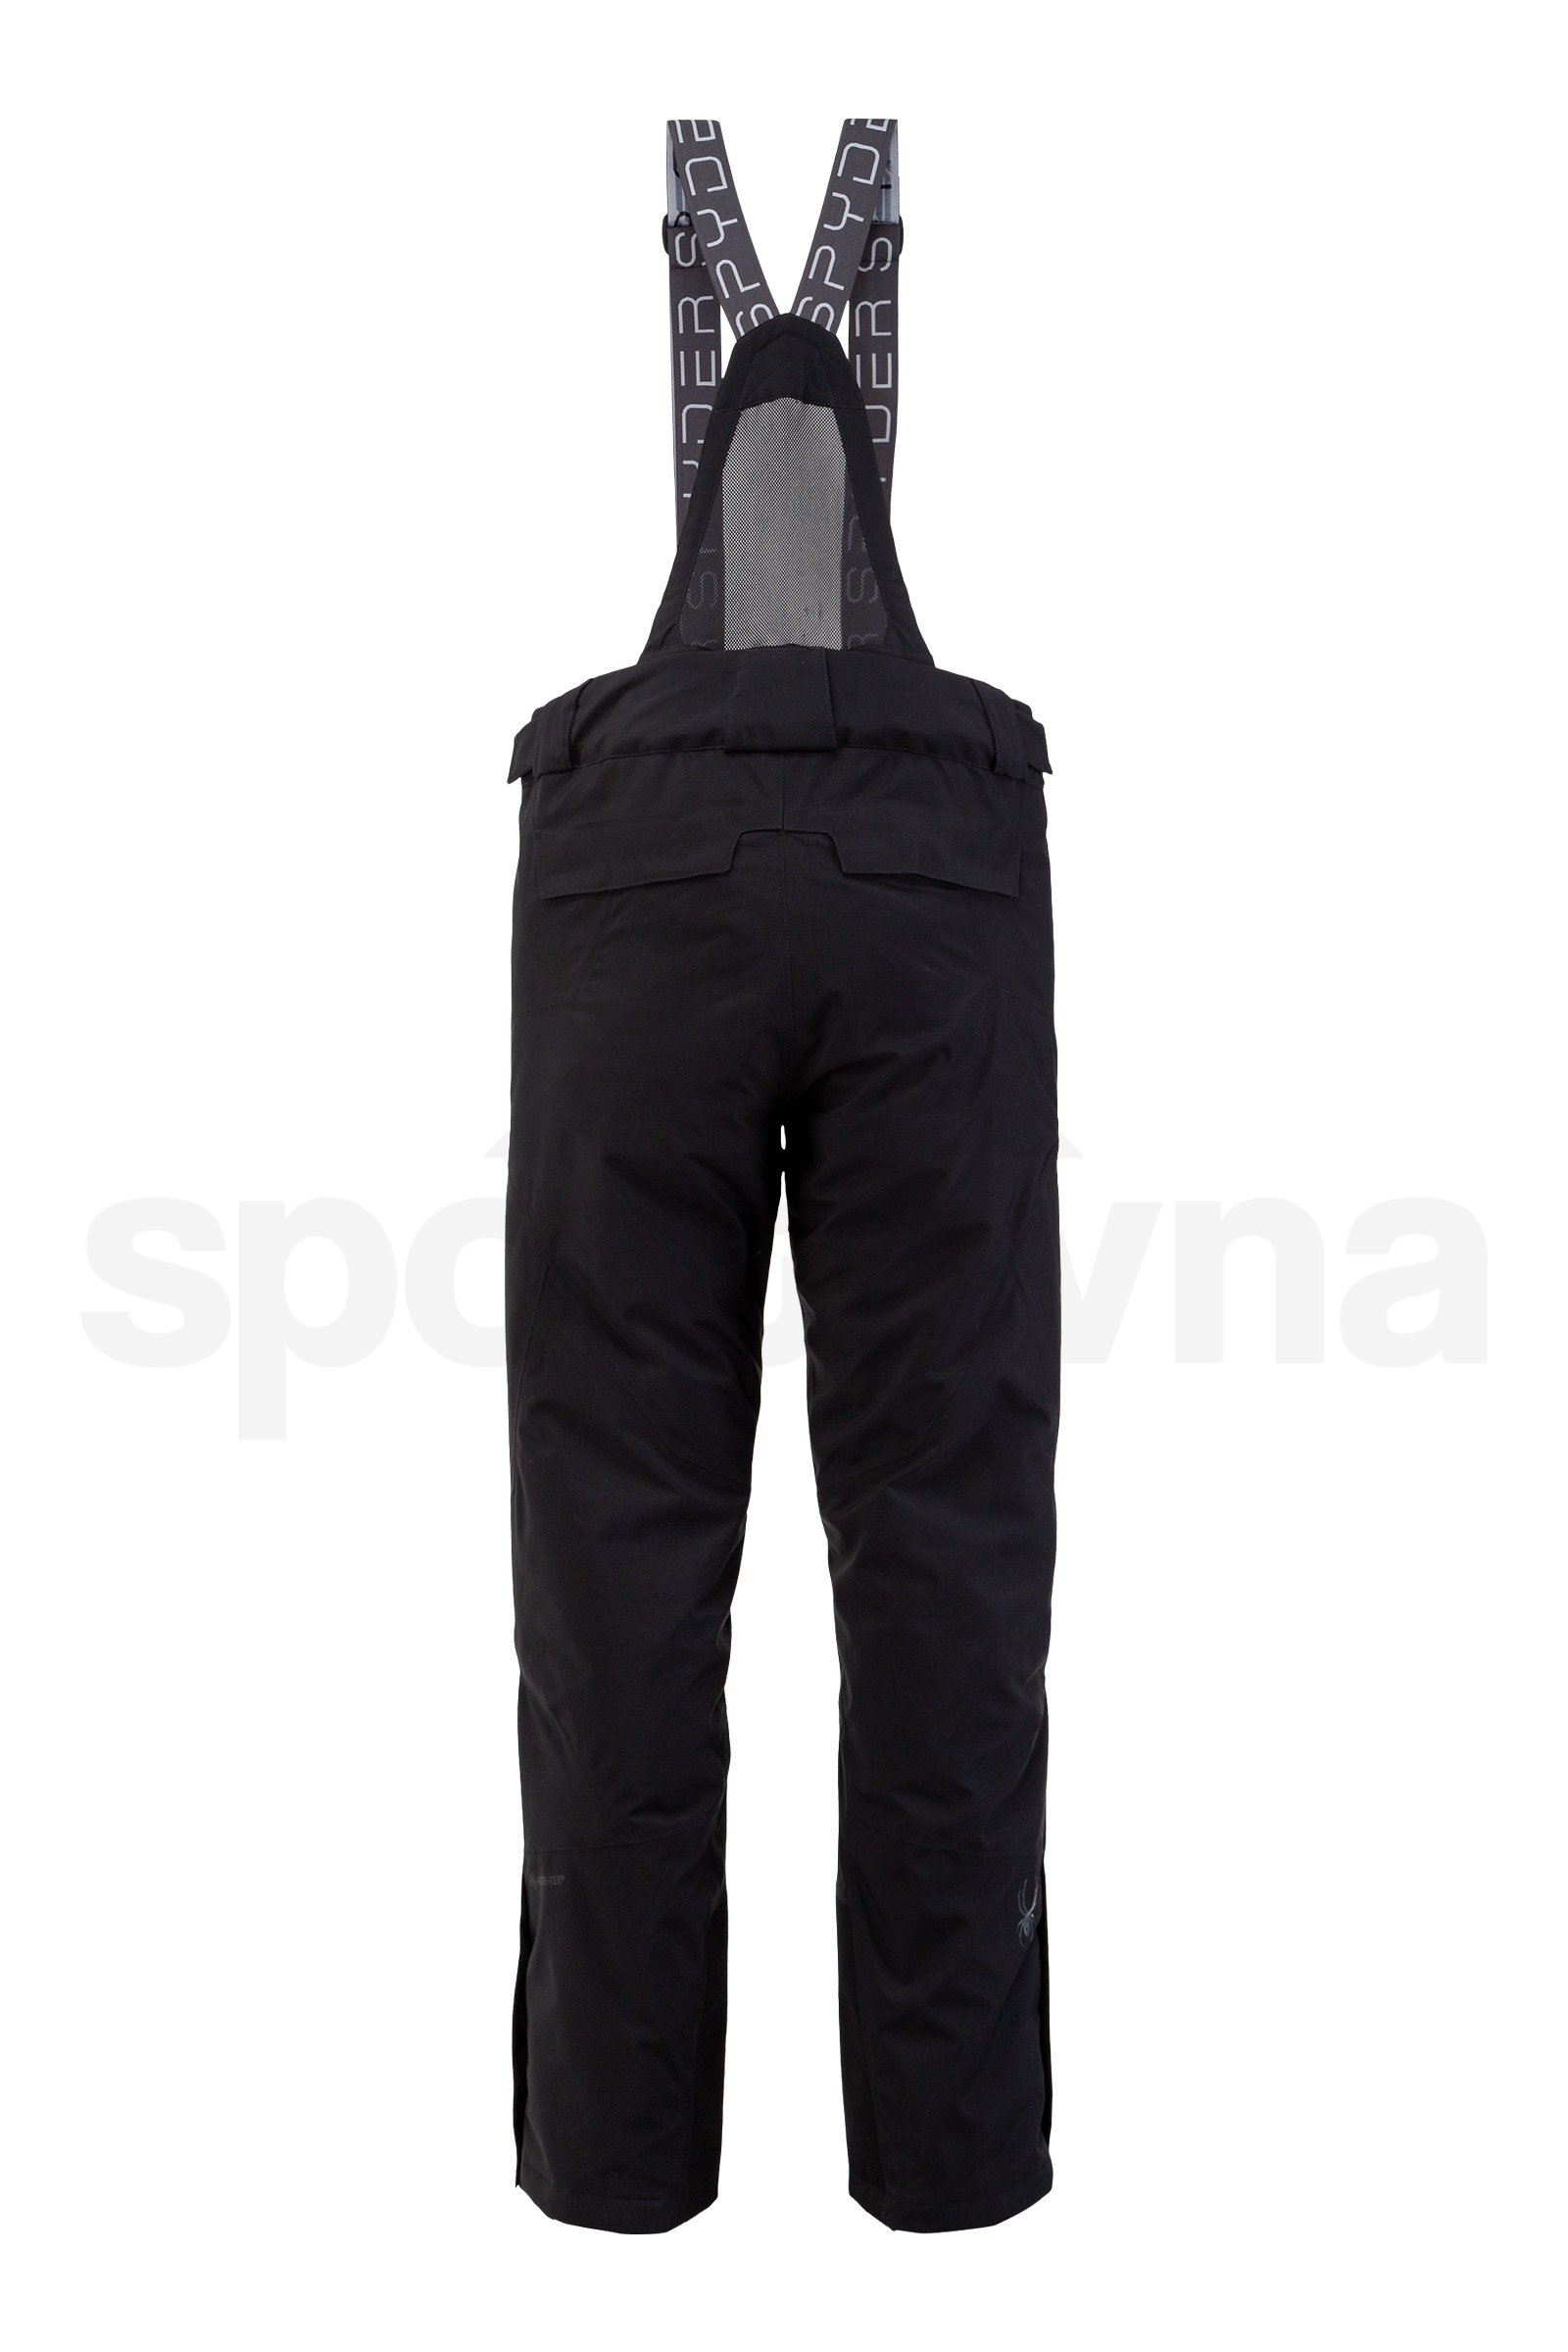 Kalhoty Spyder SP-M Dare GTX-Pant - černá